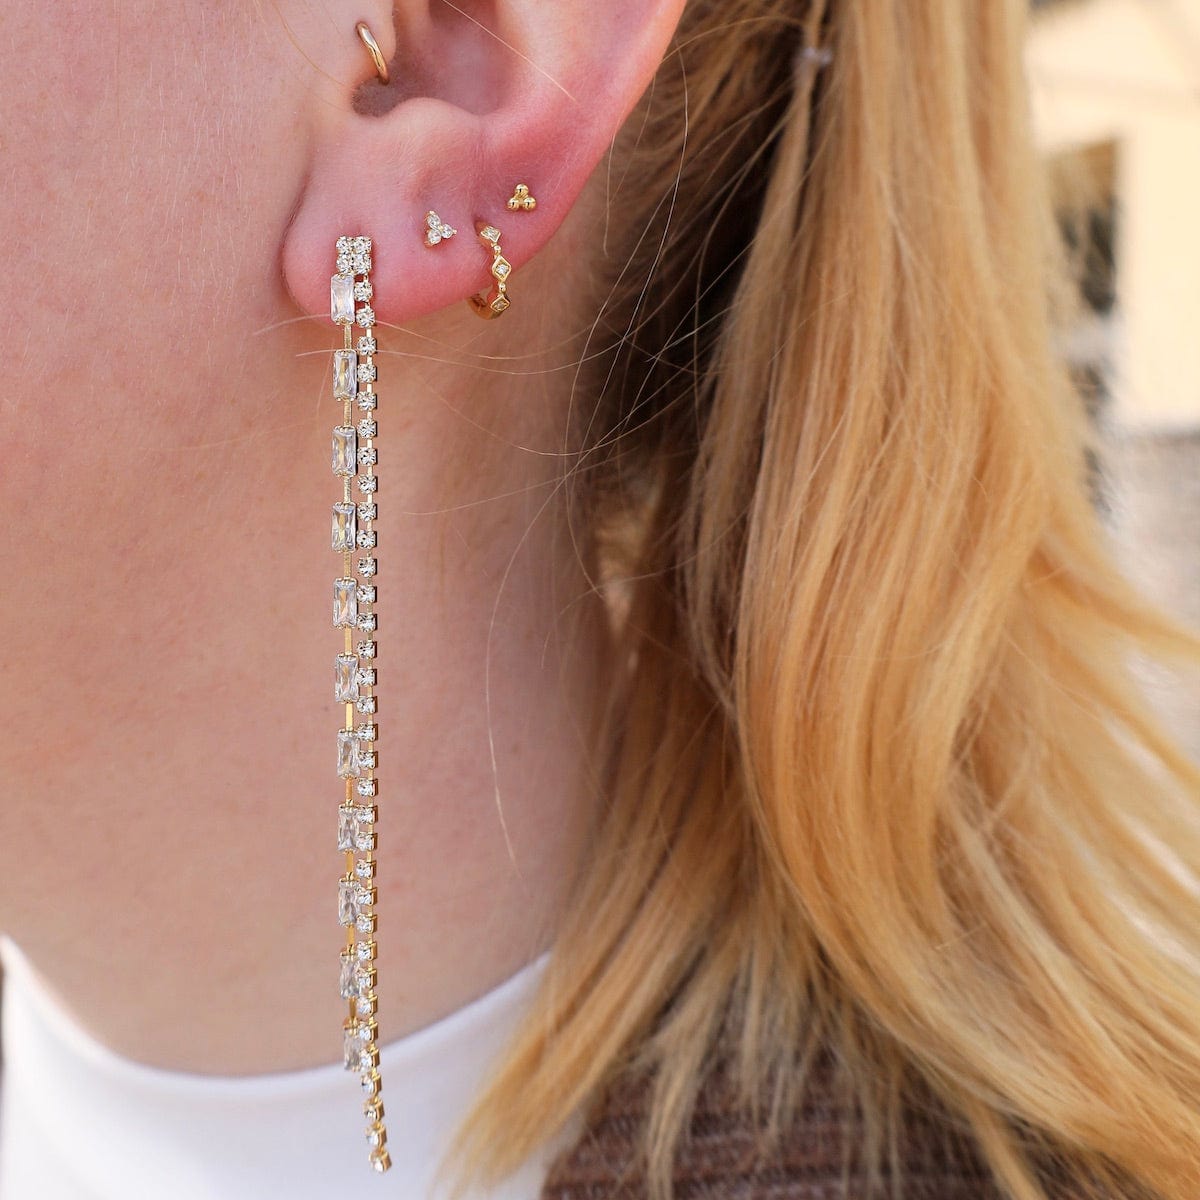 EAR-GPL Gold Plated Long Double Linear Earrings